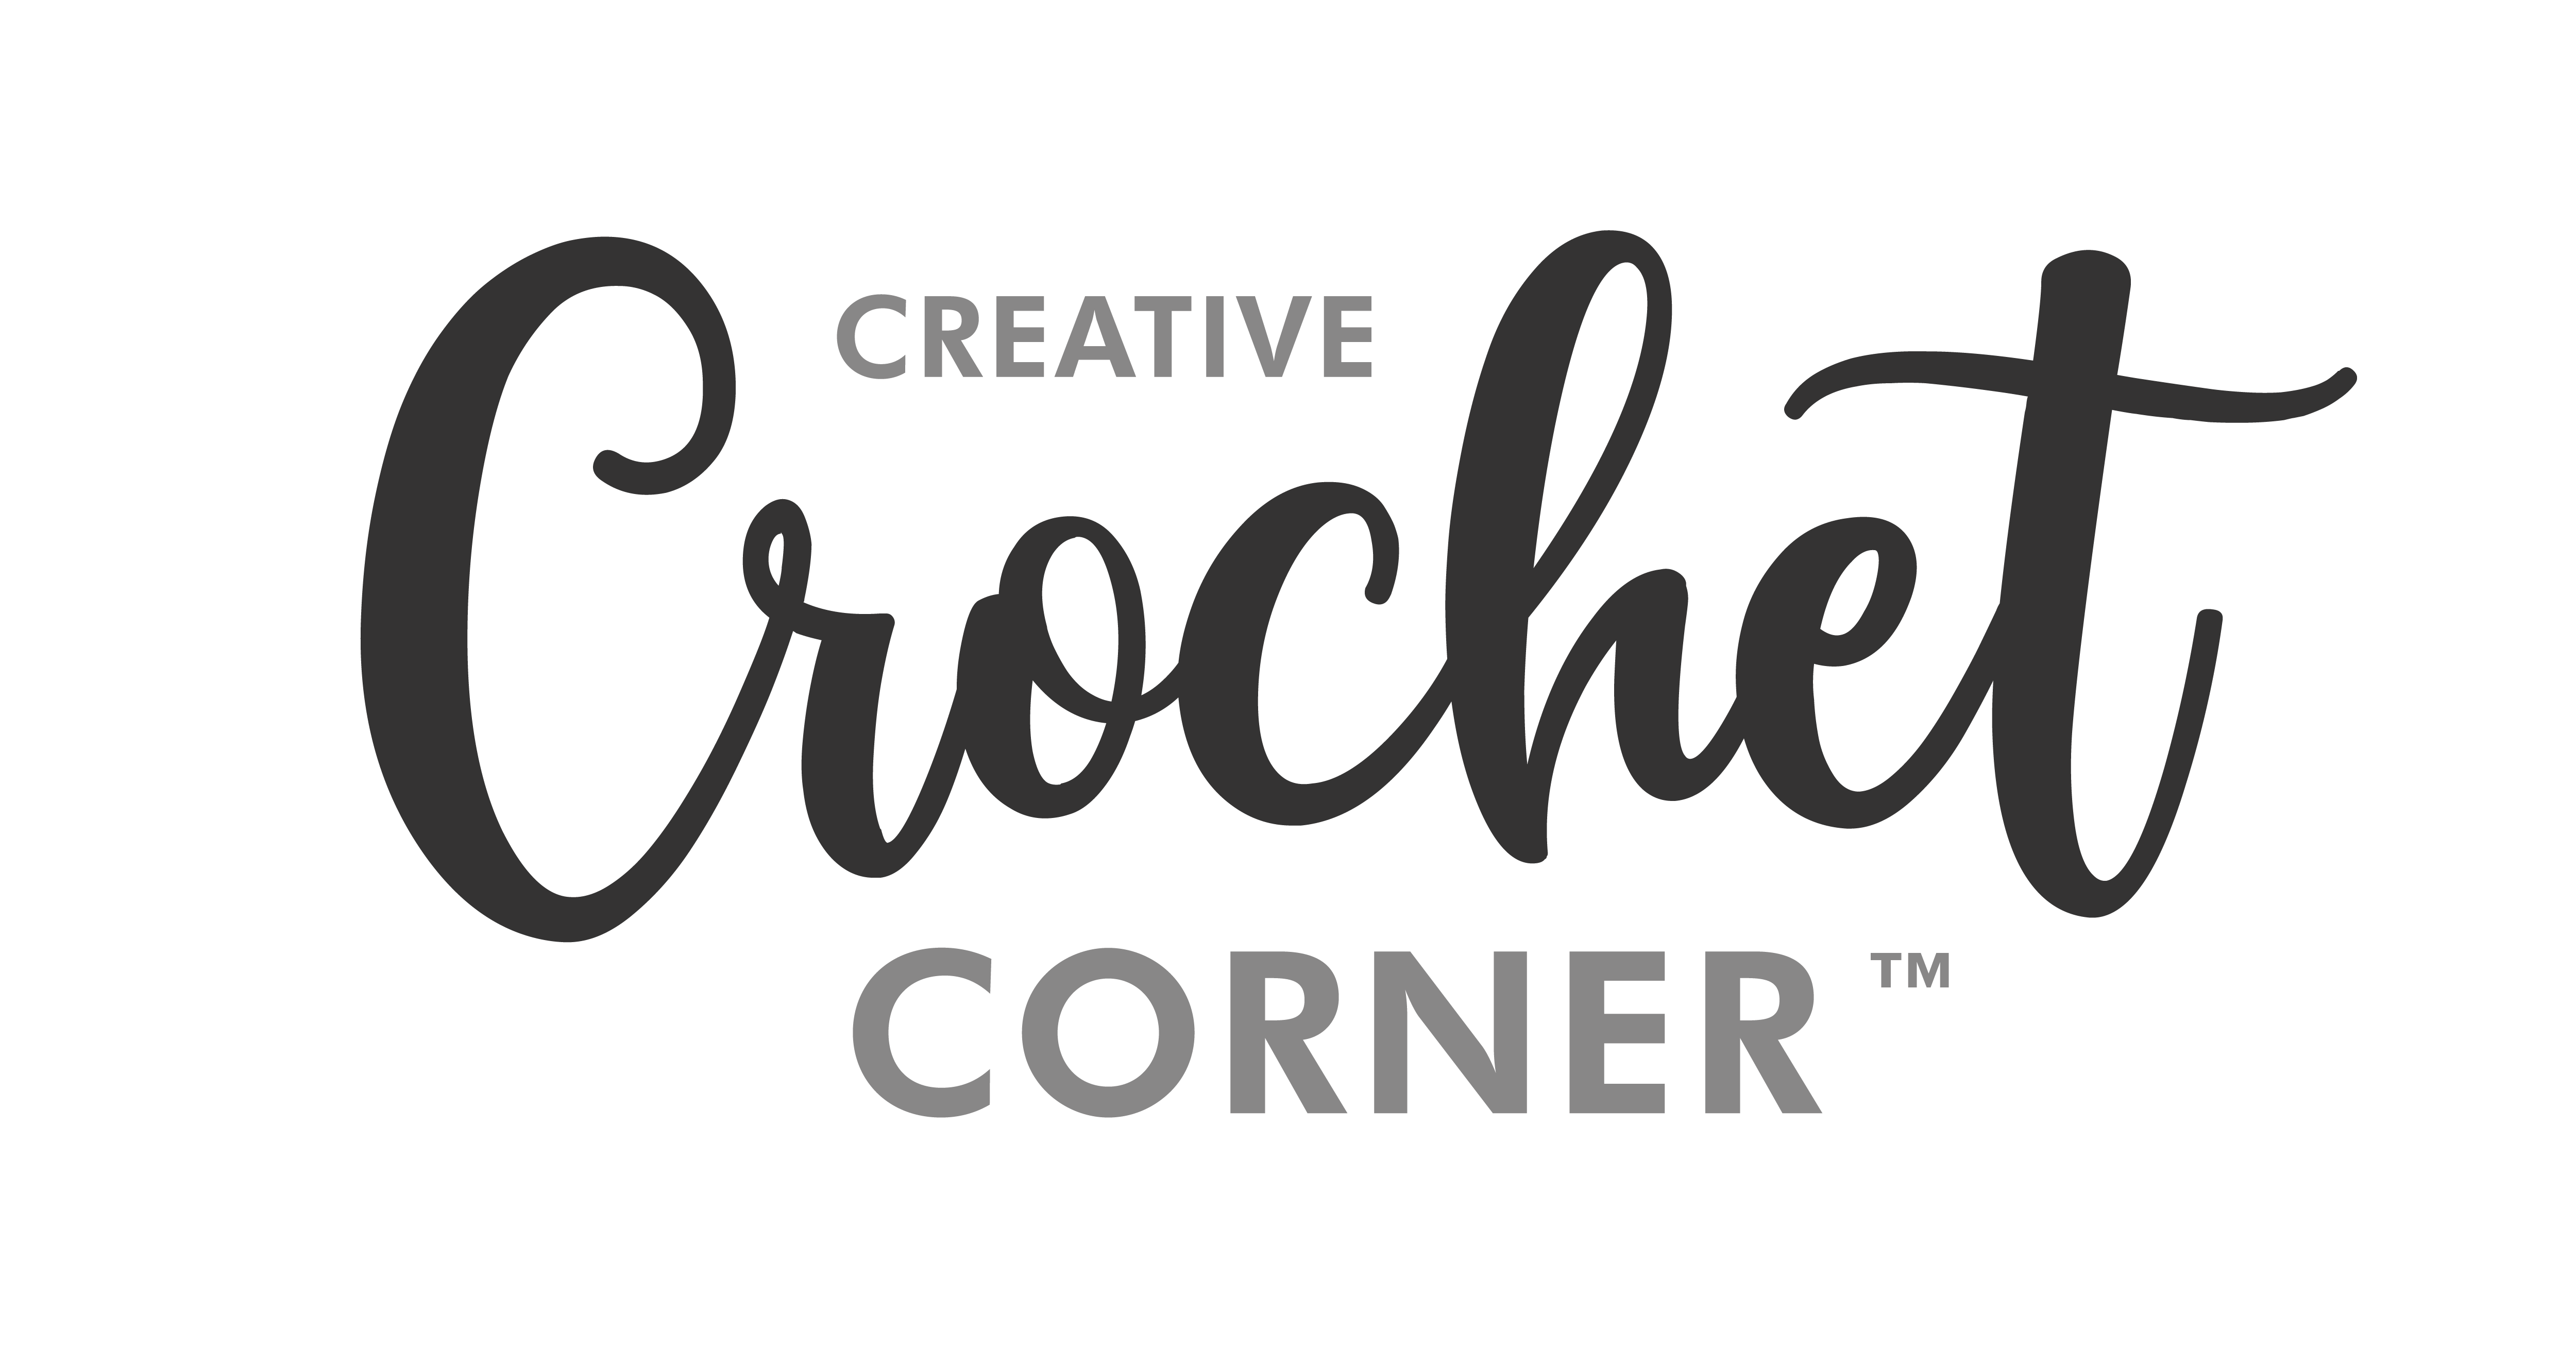 creativecrochetcorner.com logo